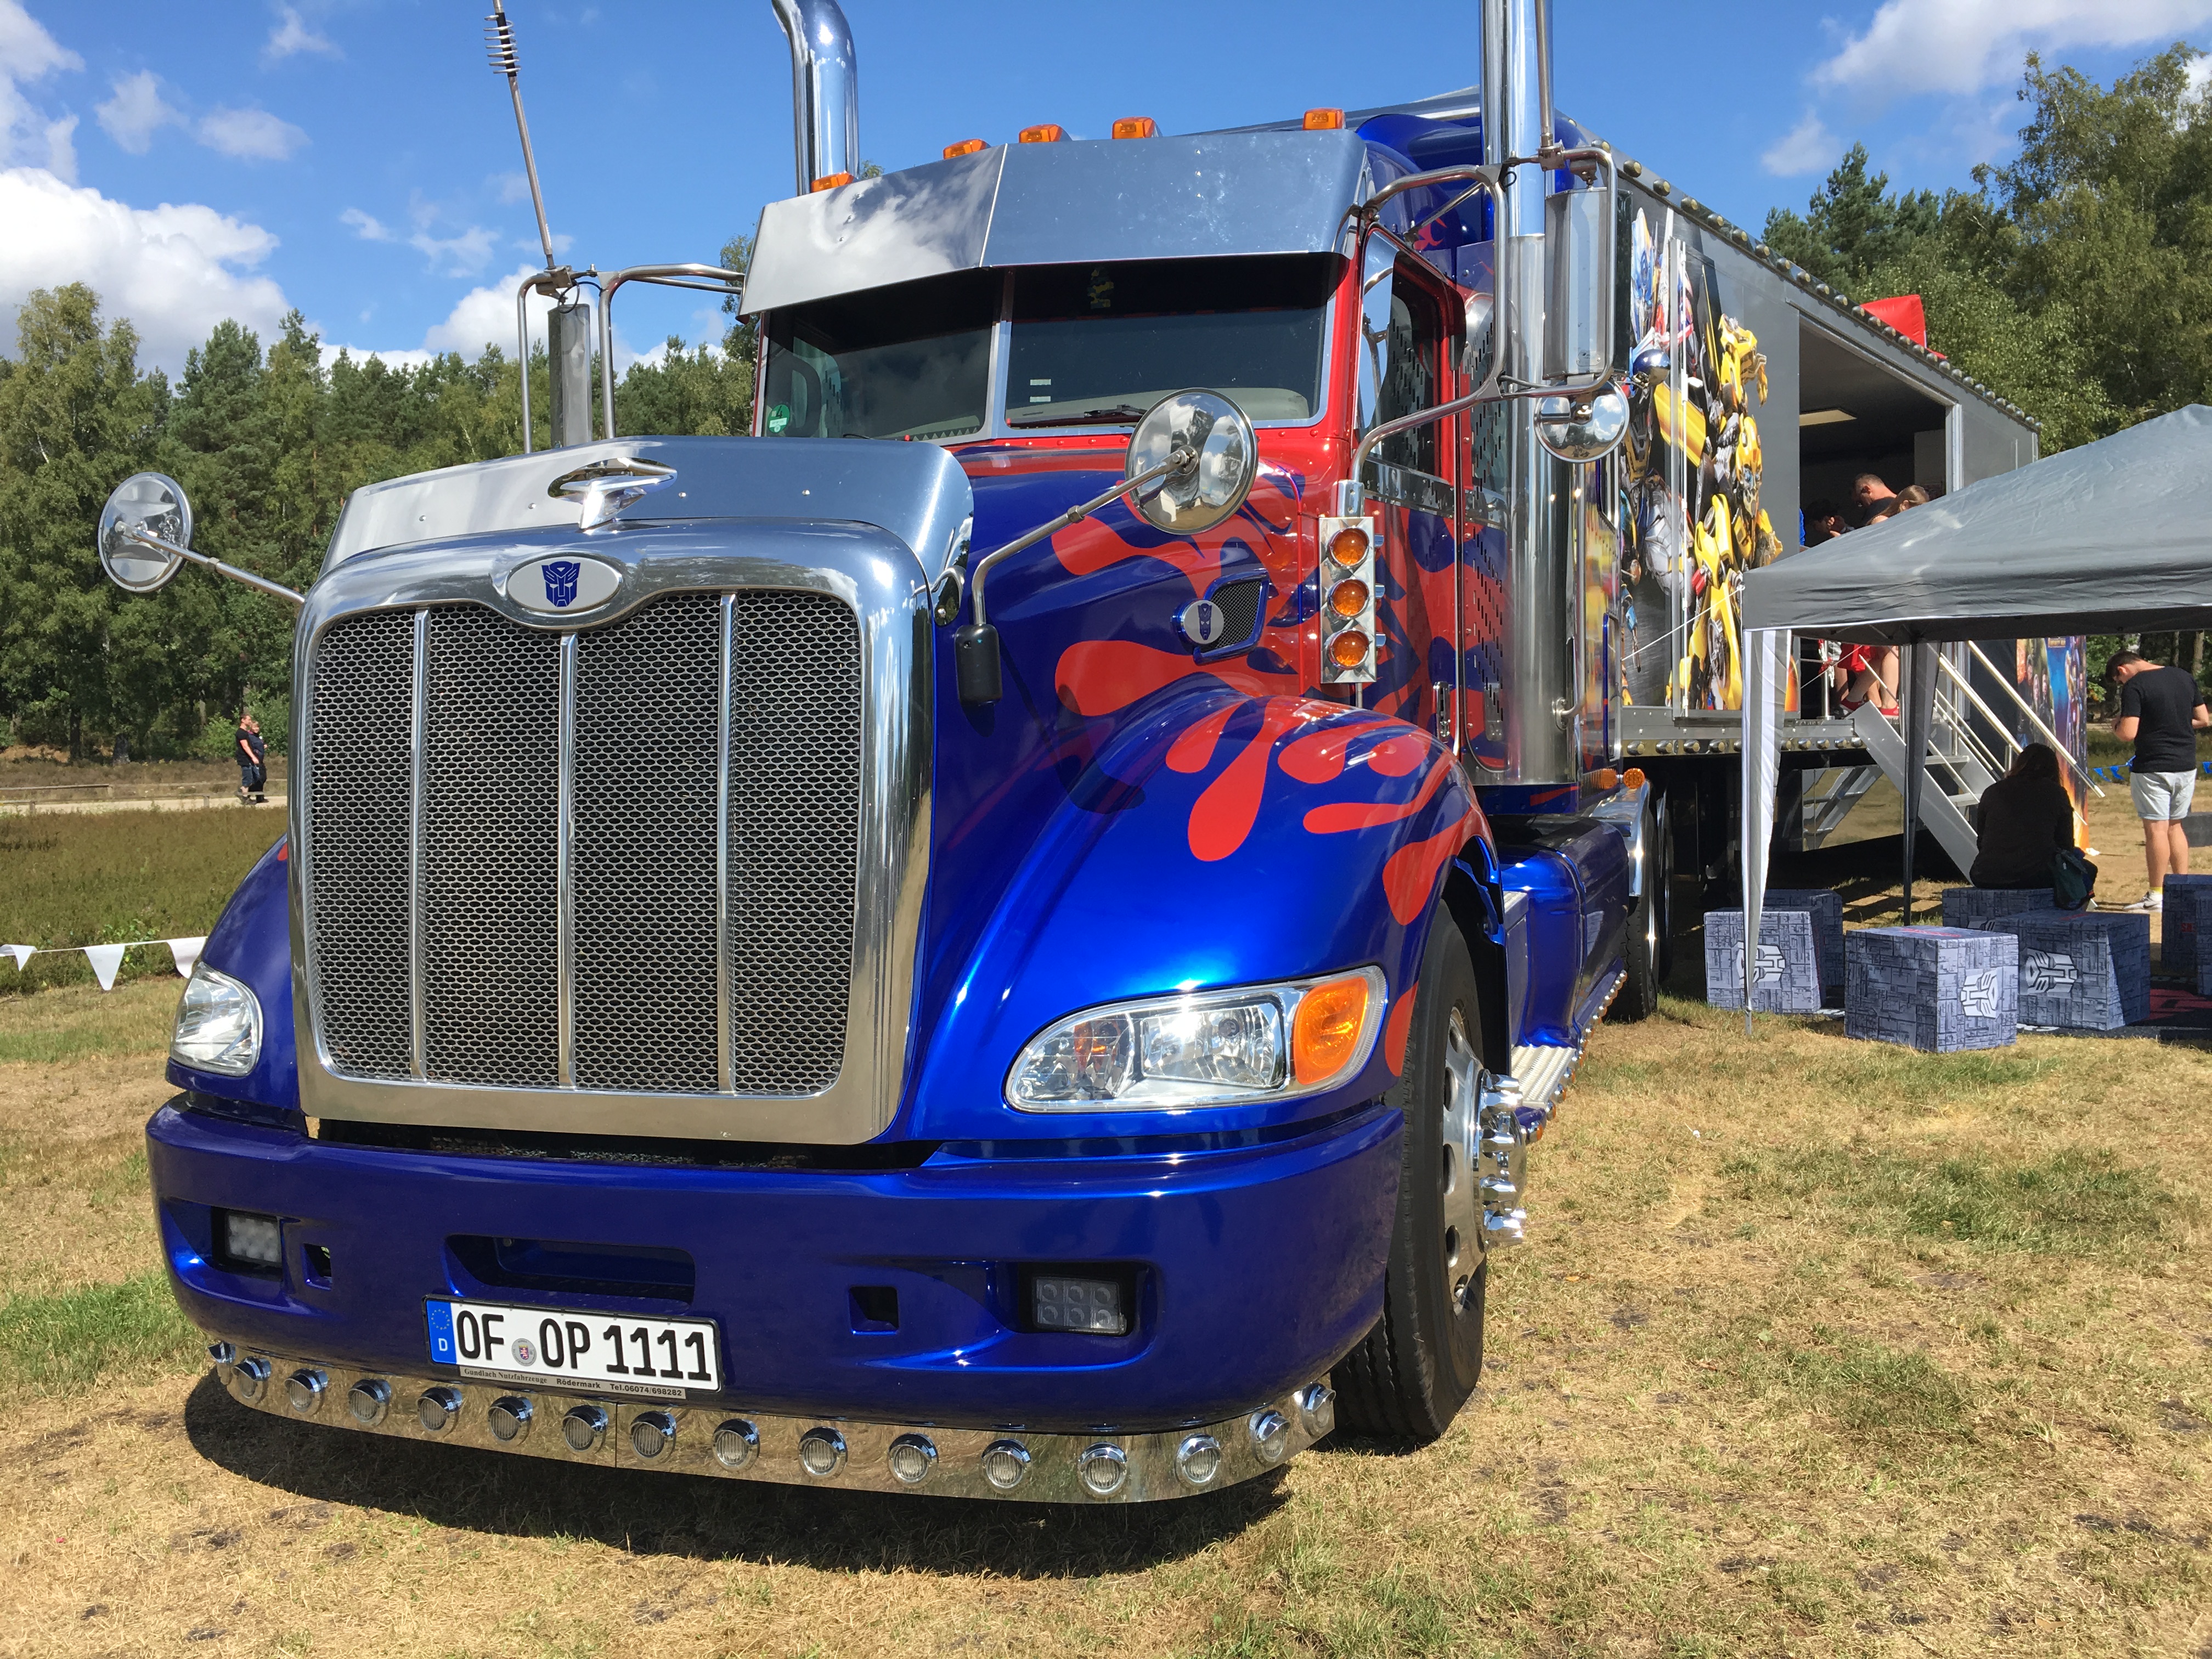 In diesem "Transformers"-Truck befand sich ein Marvel-Fanstore. (Bild: Verena Sieling)